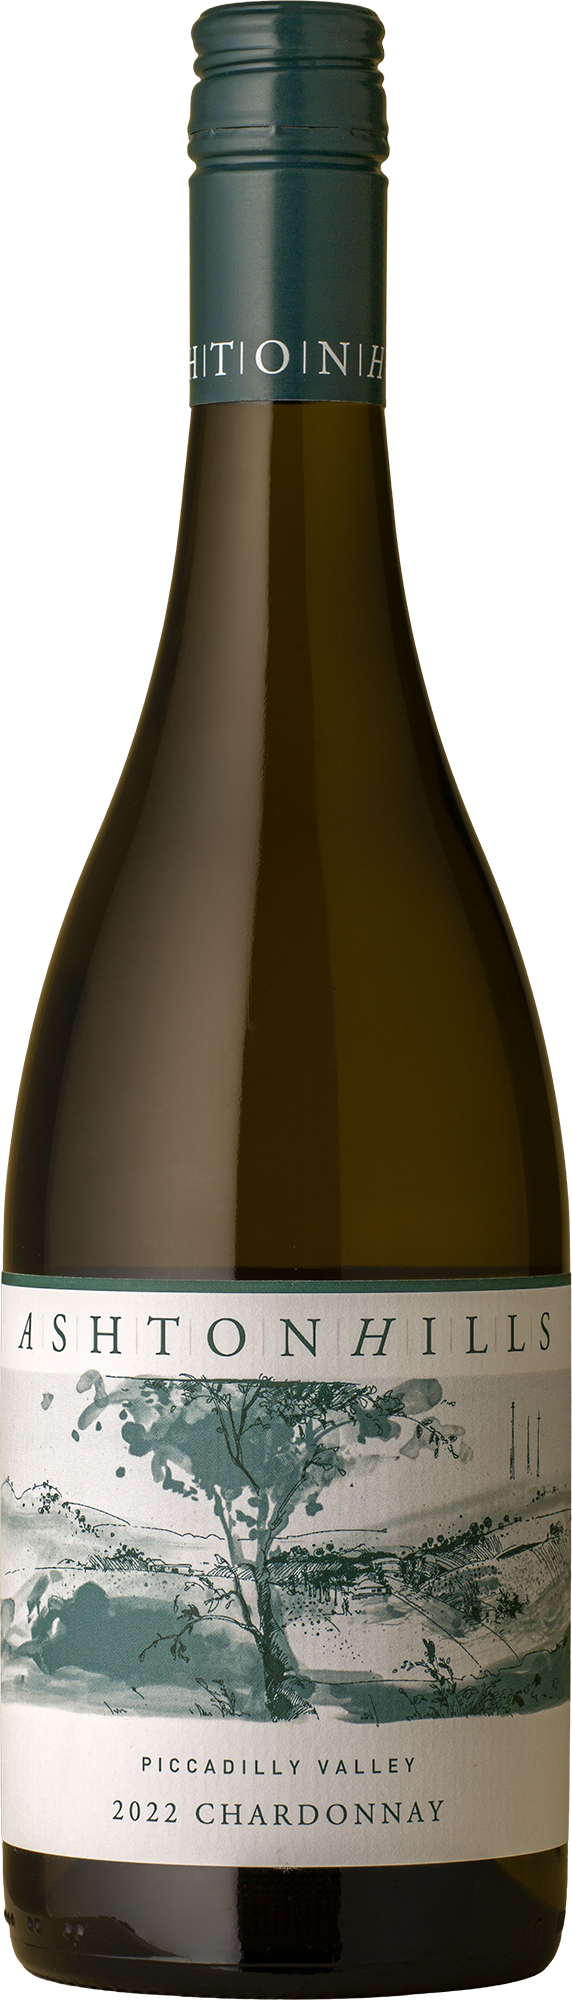 Ashton Hills - Piccadilly Valley Chardonnay 2022 White Wine